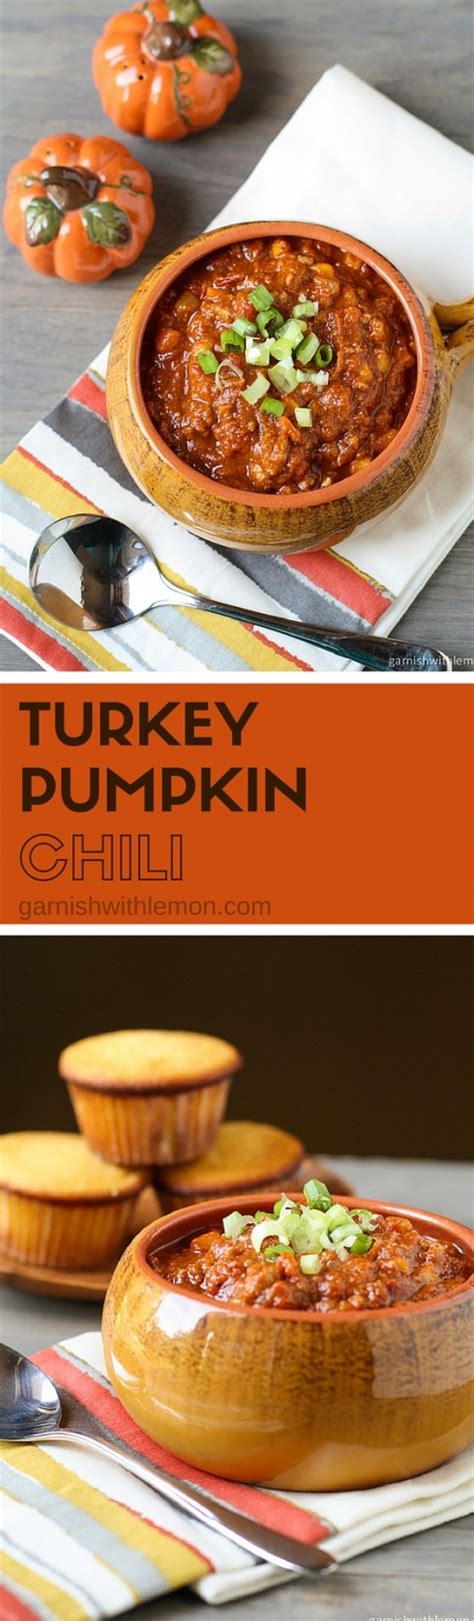 Turkey Pumpkin Chili Recipe Pumpkin Chili Recipe Turkey Pumpkin